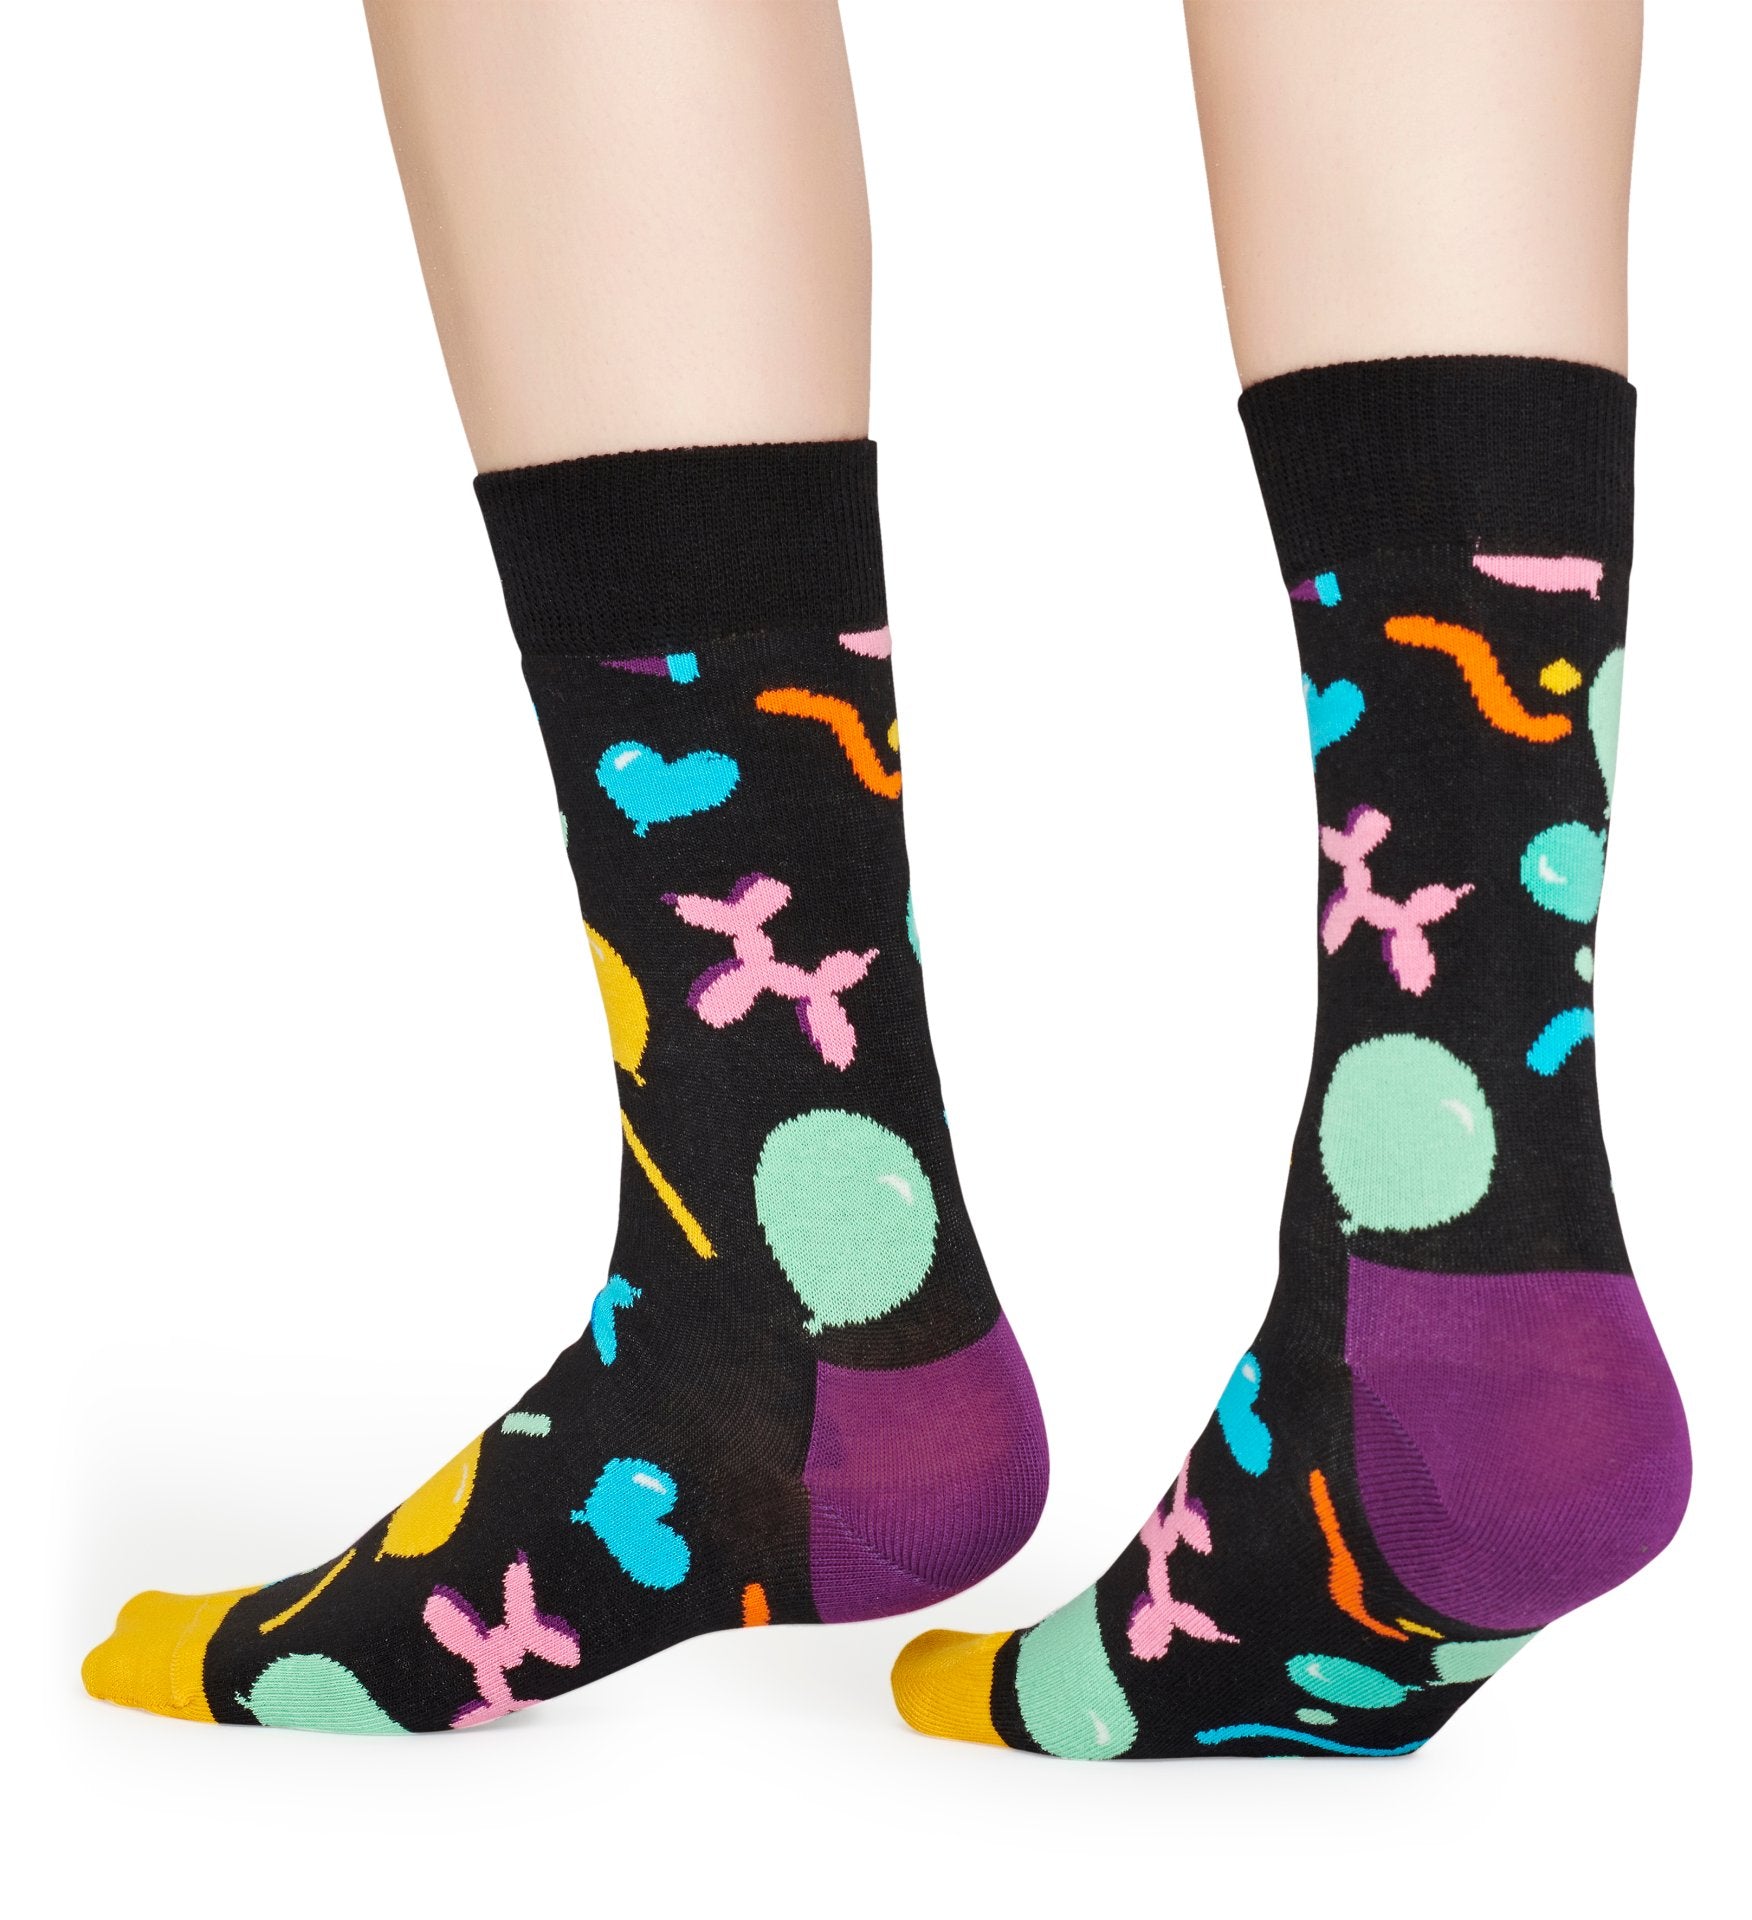 Černé ponožky Happy Socks s nafukovacími zvířátky, vzor Balloon Animal